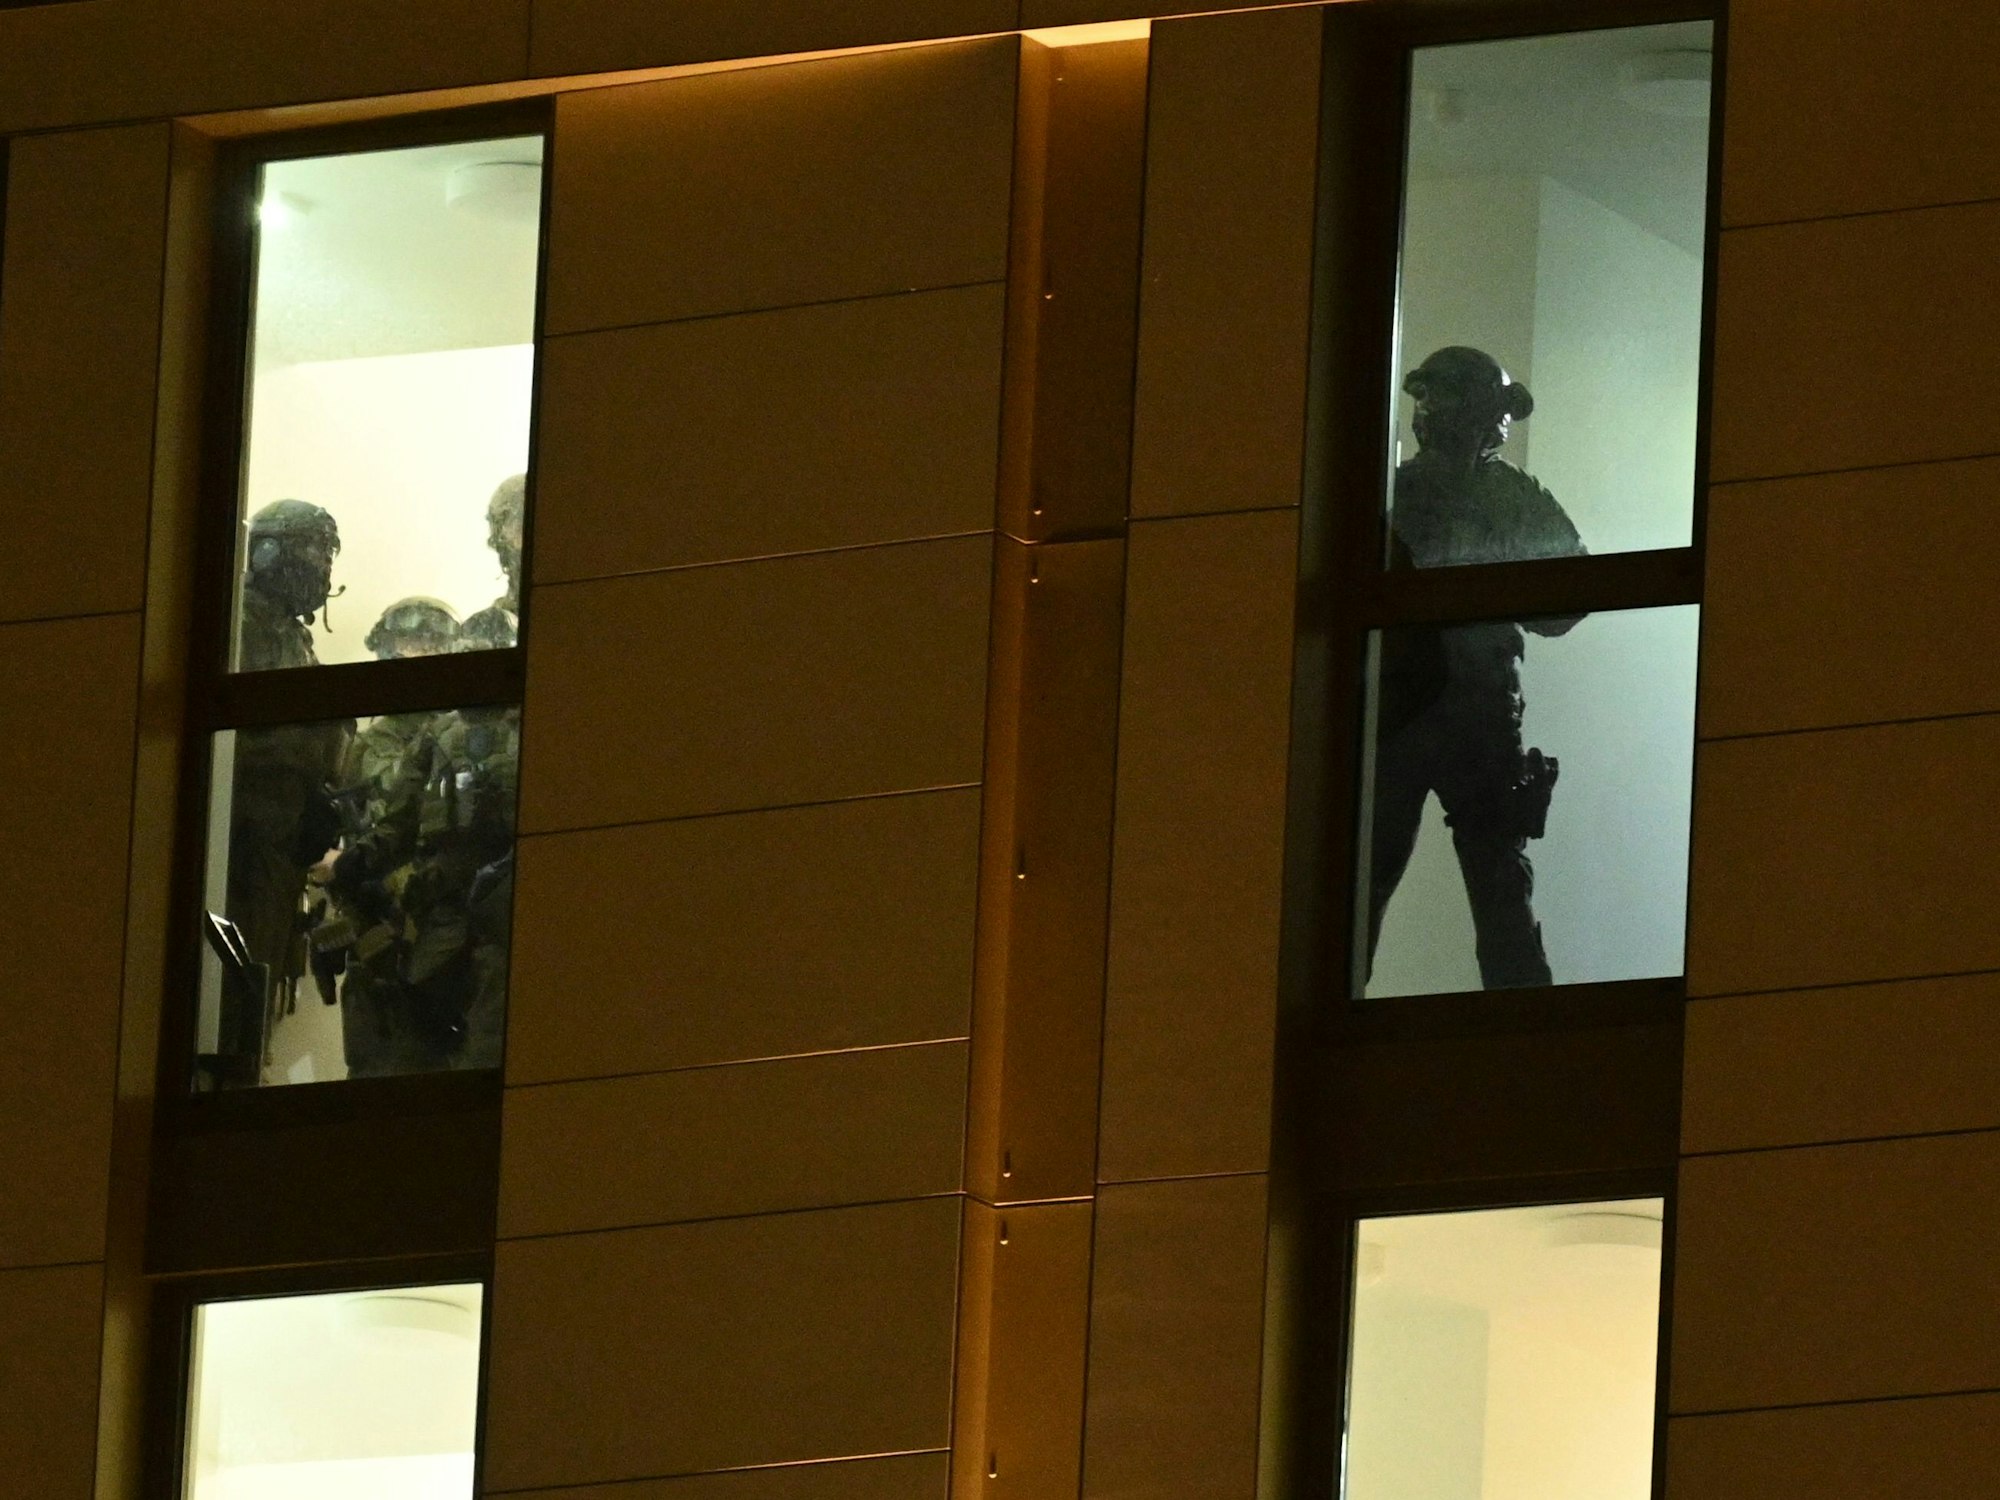 Spezialkräfte der Polizei im Einsatz in einem Hotel.